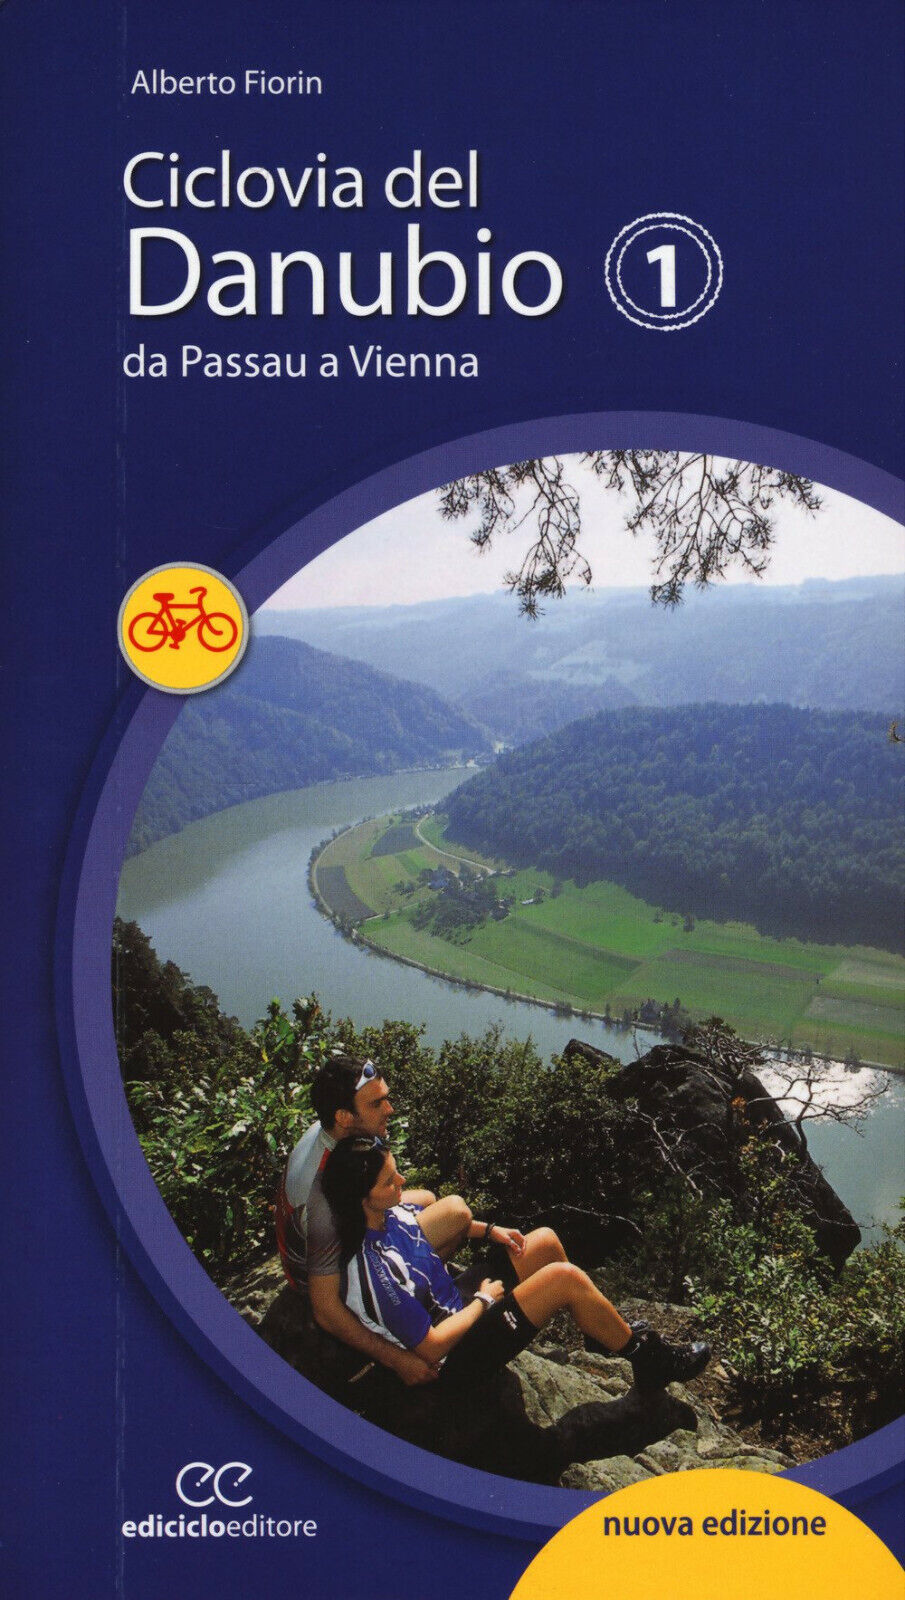 Ciclovia del Danubio da Passau a Vienna - Alberto Fiorin - Ediciclo, 2017